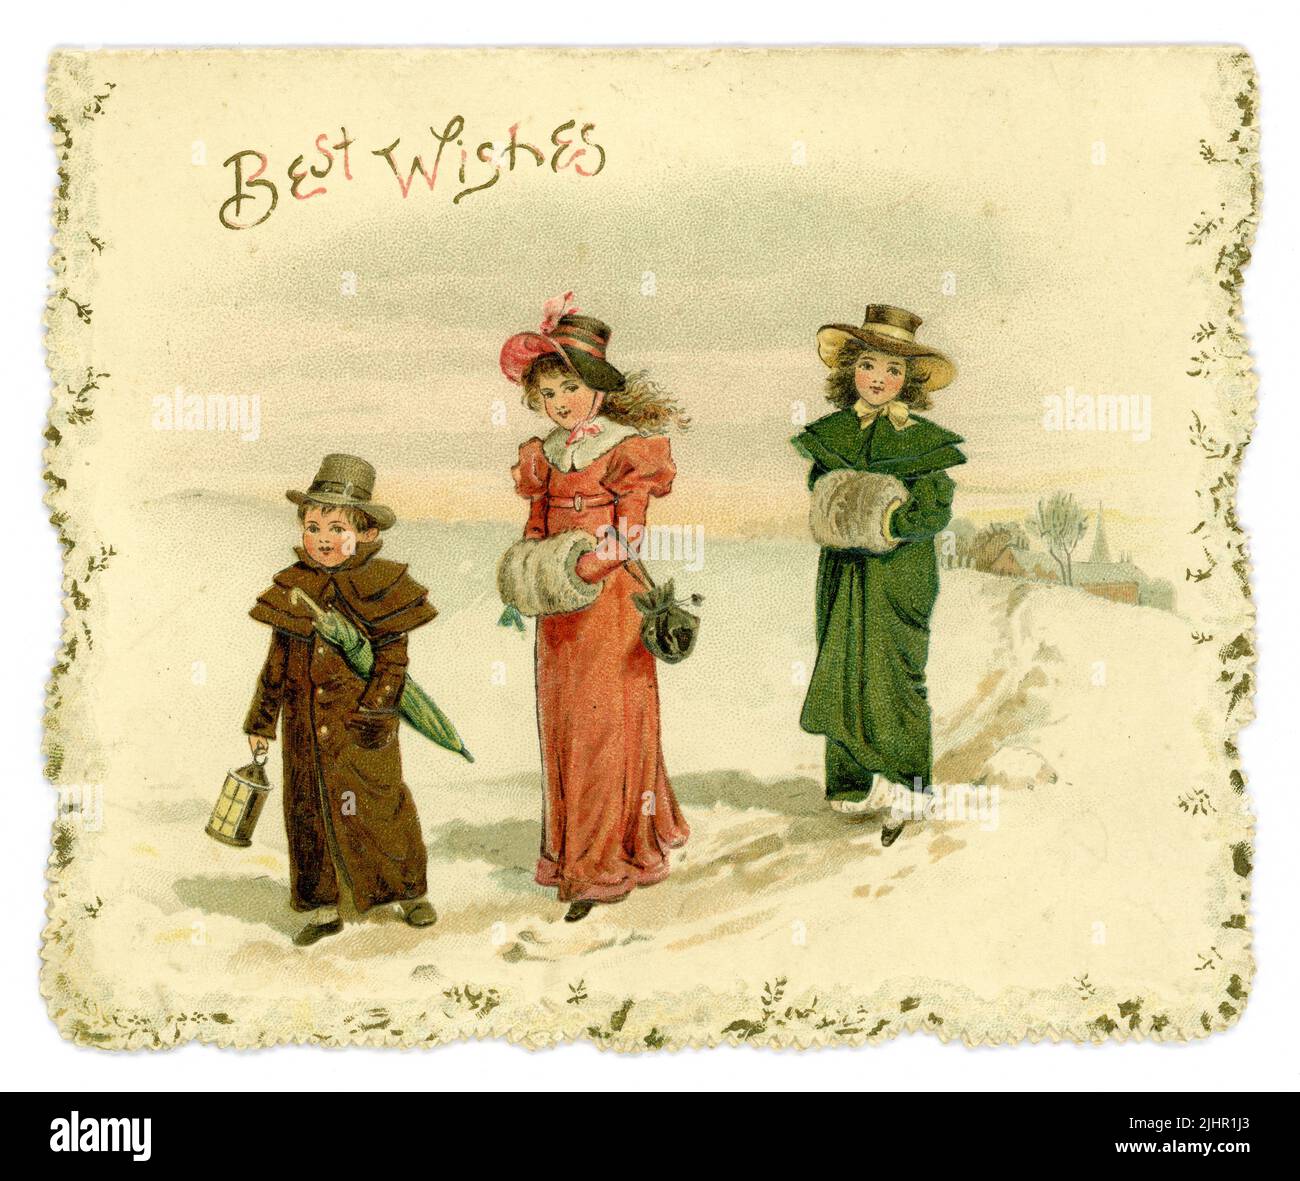 Original Edwardian Ära Weihnachtsgrüße Karte, viktorianische Weihnachtskarte. Begrüßung ist „Beste Wünsche“. Die Kinder sind im Stil der Regency-Zeit (Regency war 1811-1820) gekleidet, die im Schnee laufen, ähnliche Online-Postkarten, die in den USA verschickt wurden. Vom 1904 Stockfoto